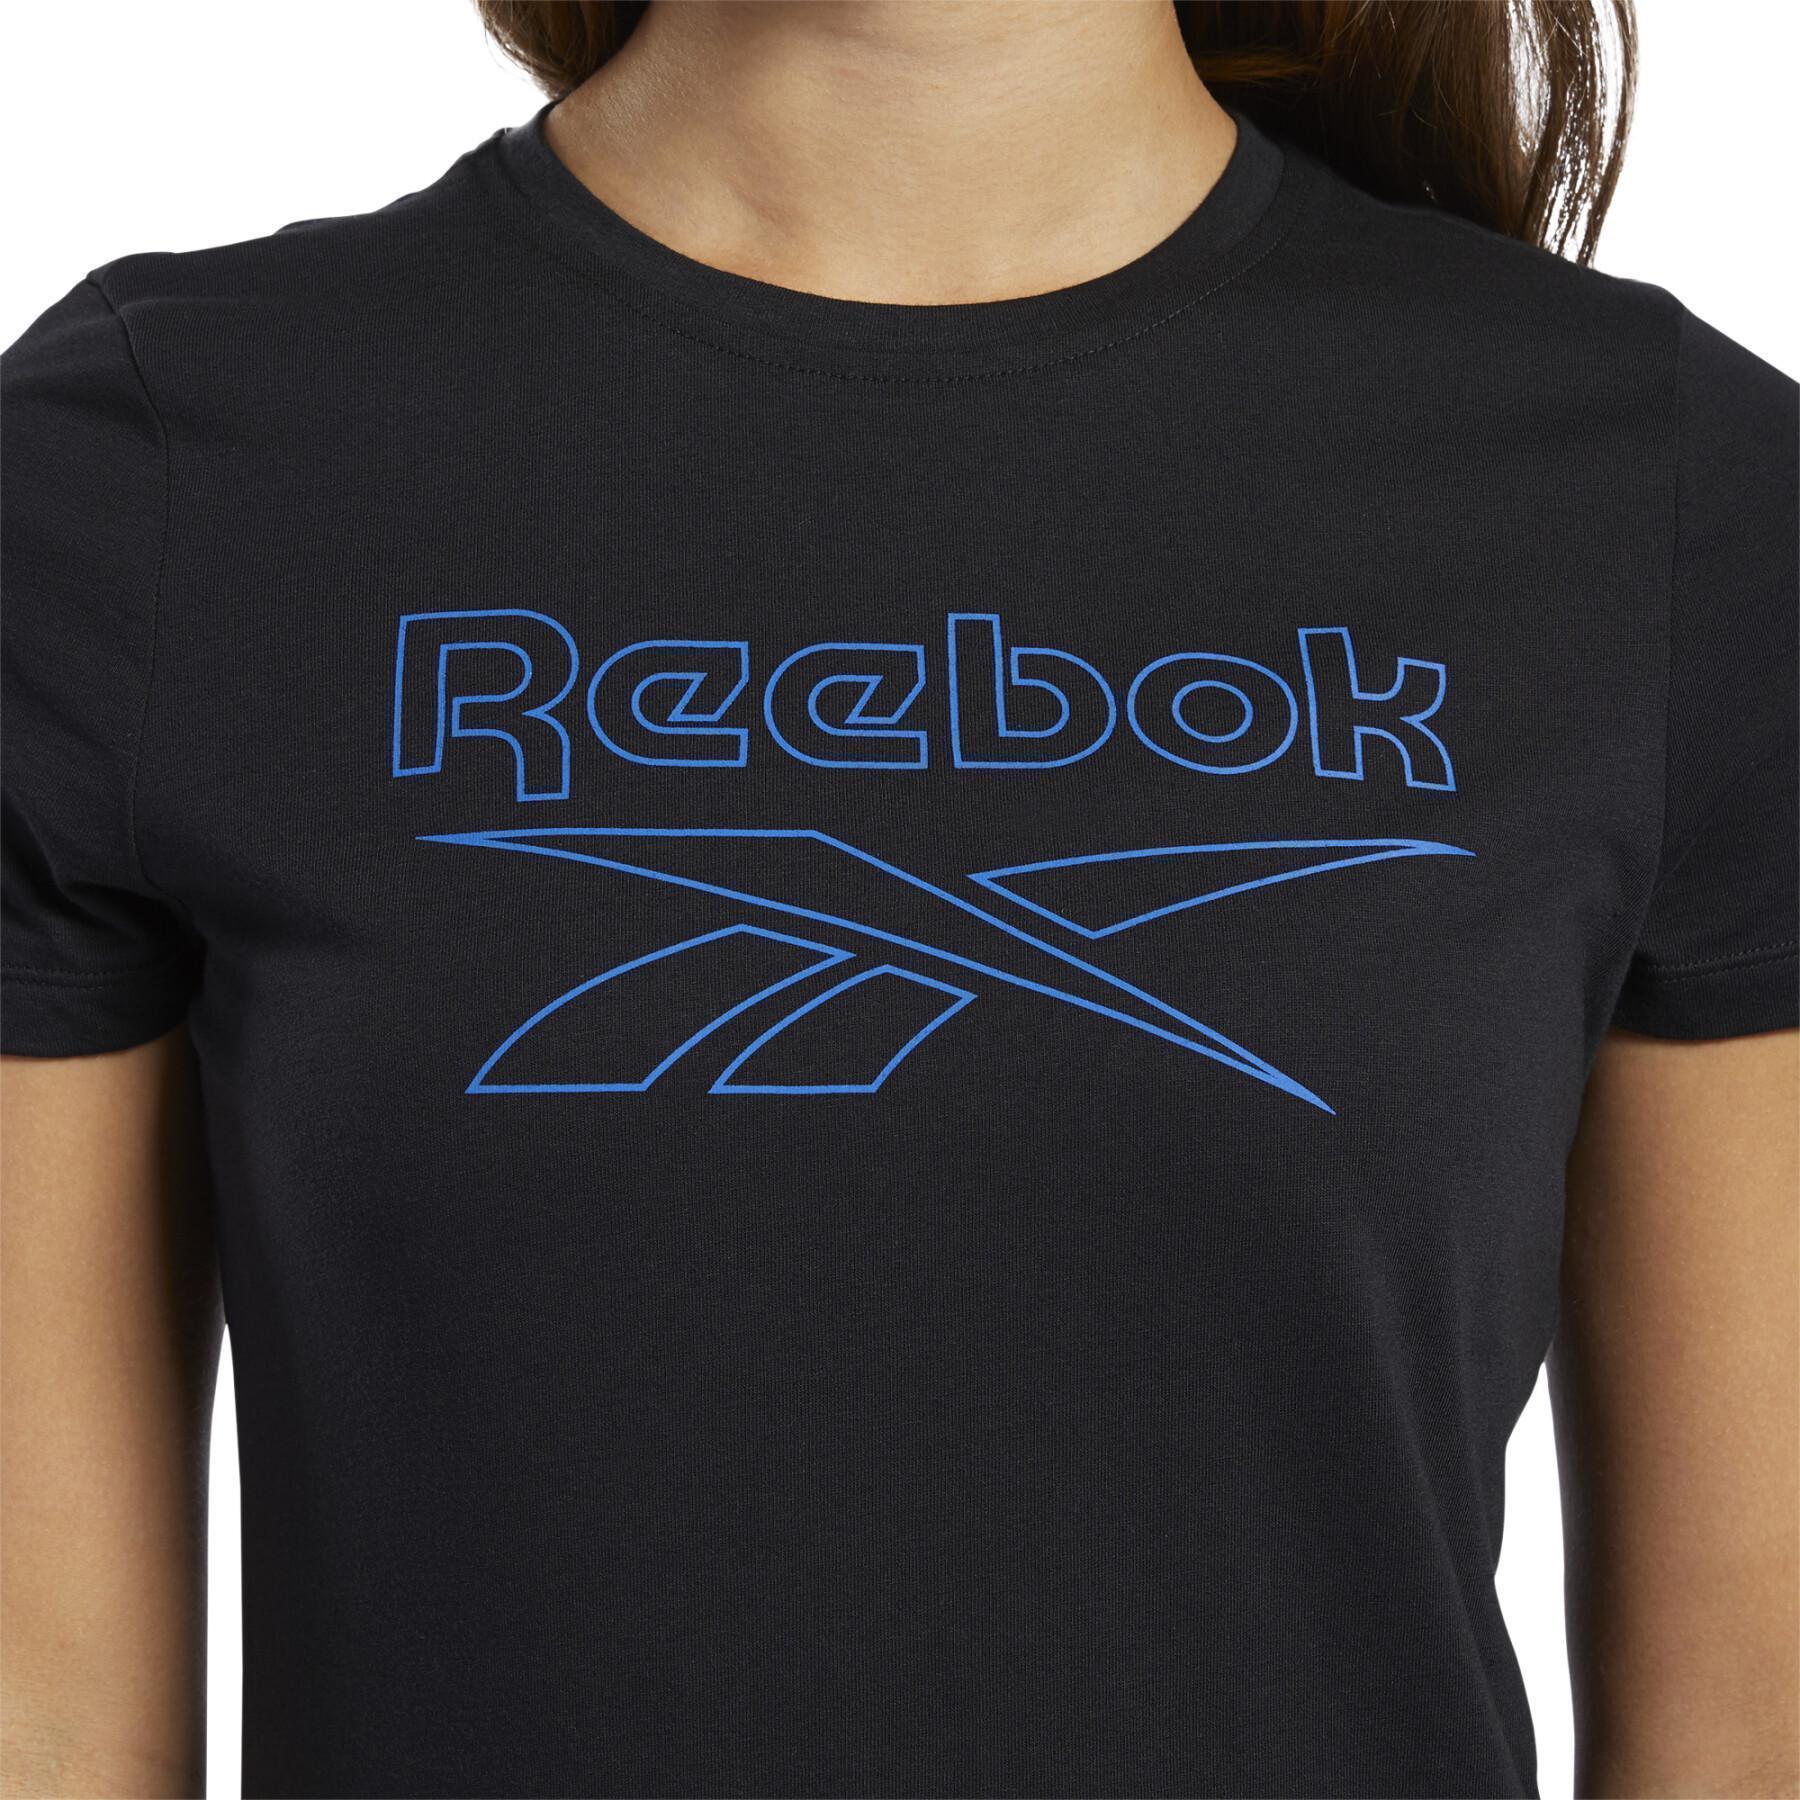 Women's T-shirt Reebok Essentials Graphic Delta